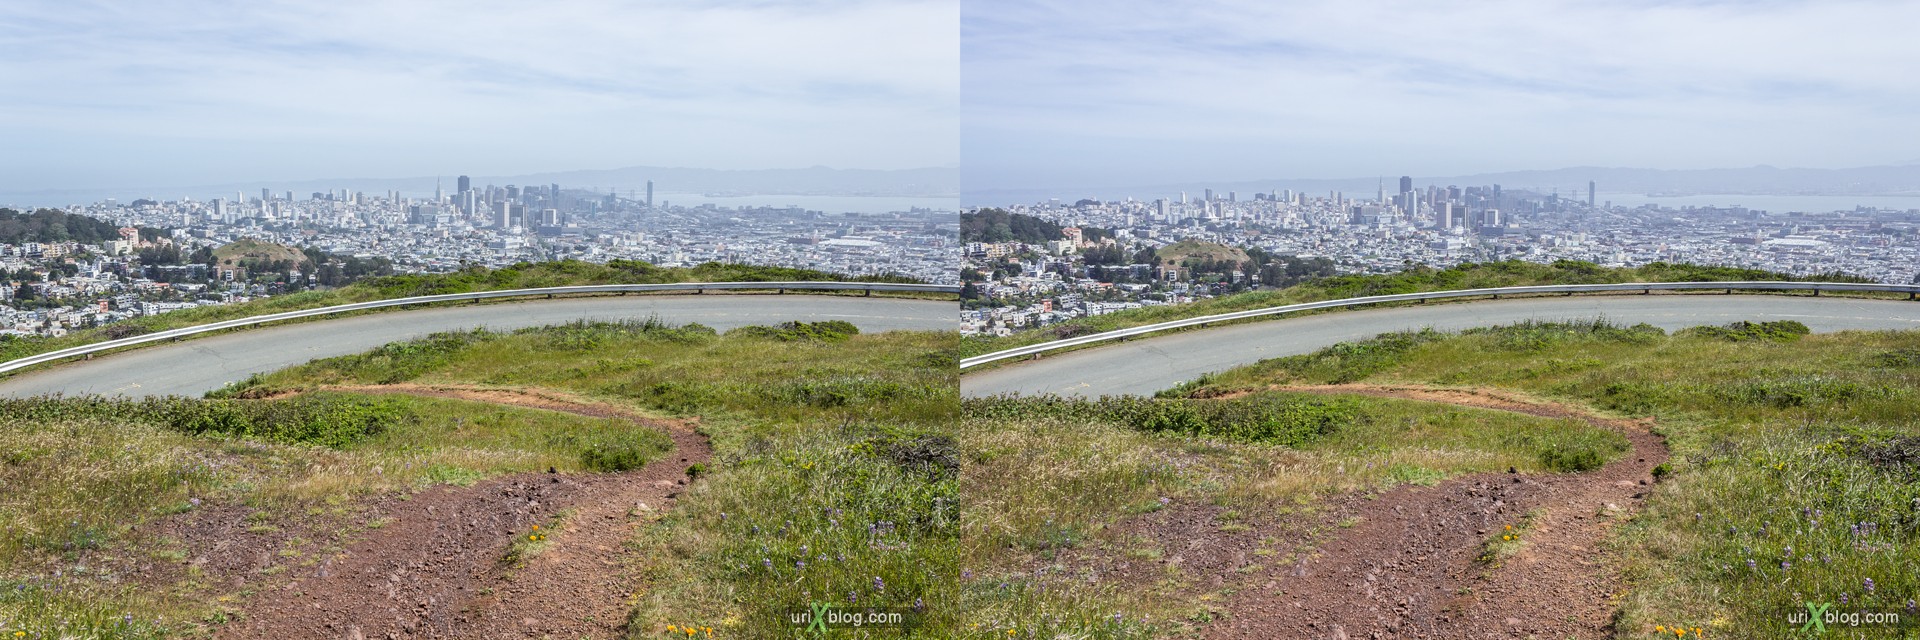 2013, Твин Пикс, Сан-Франциско, США, 3D, перекрёстные стереопары, стерео, стереопара, стереопары